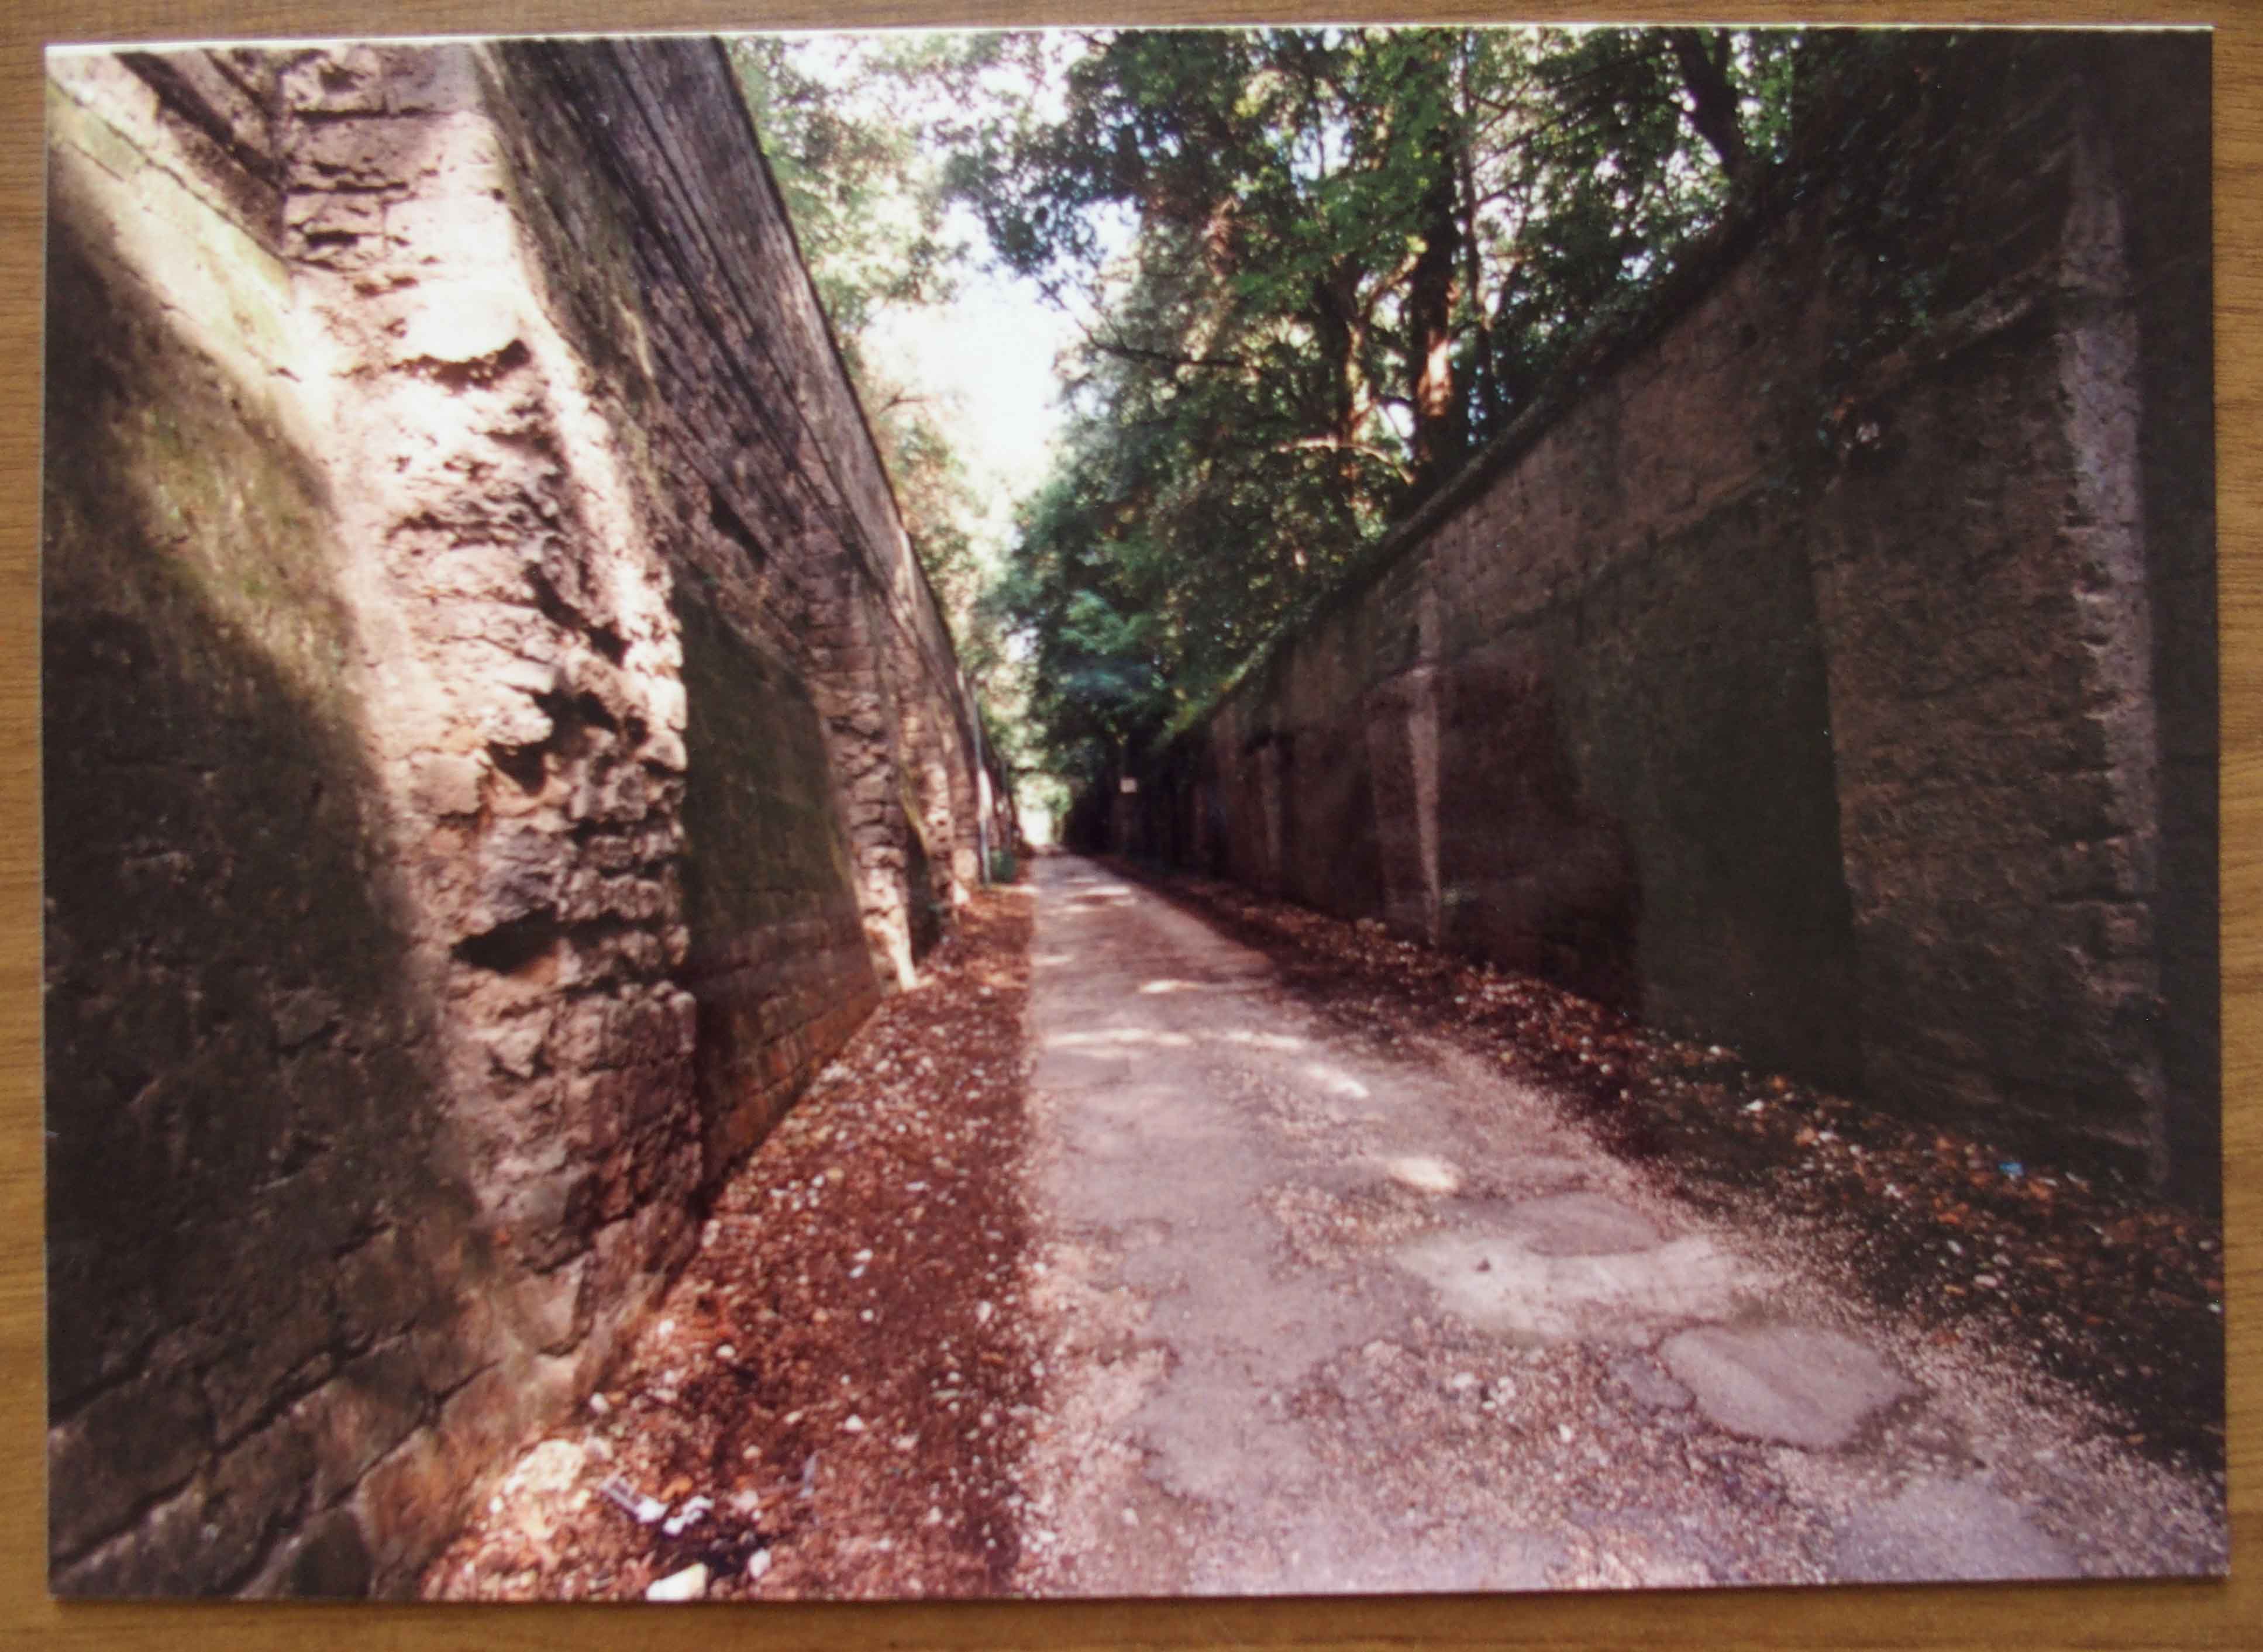 Muro di recinzione, Fabbrica del circondario (muro) - Caserta (CE) 